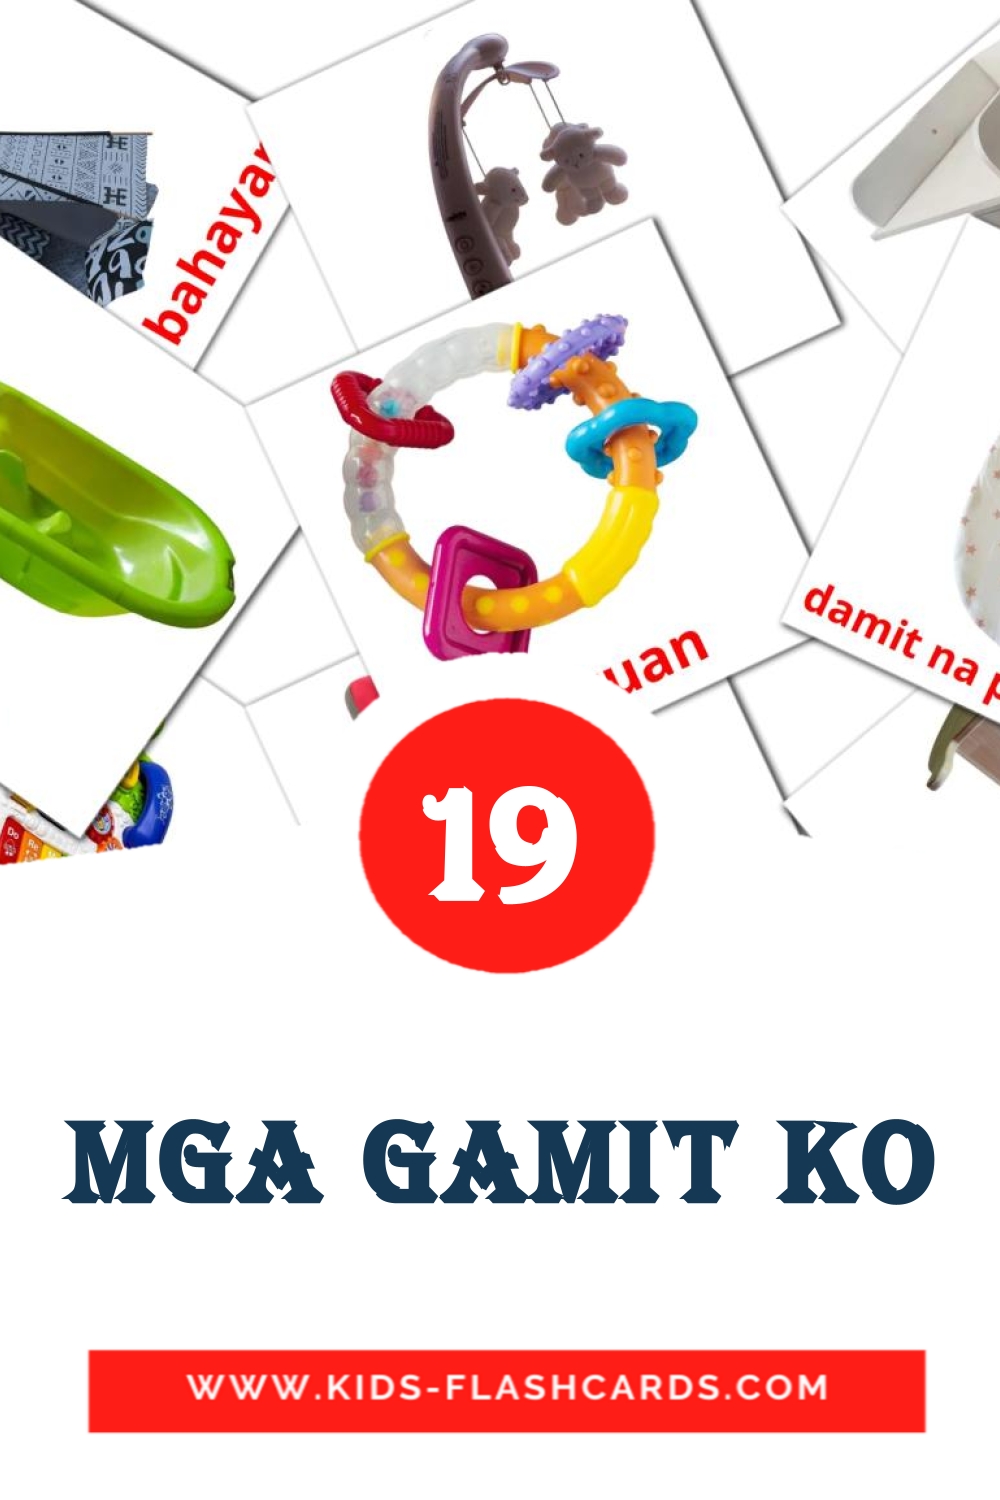 19 Mga gamit ko fotokaarten voor kleuters in het filipino